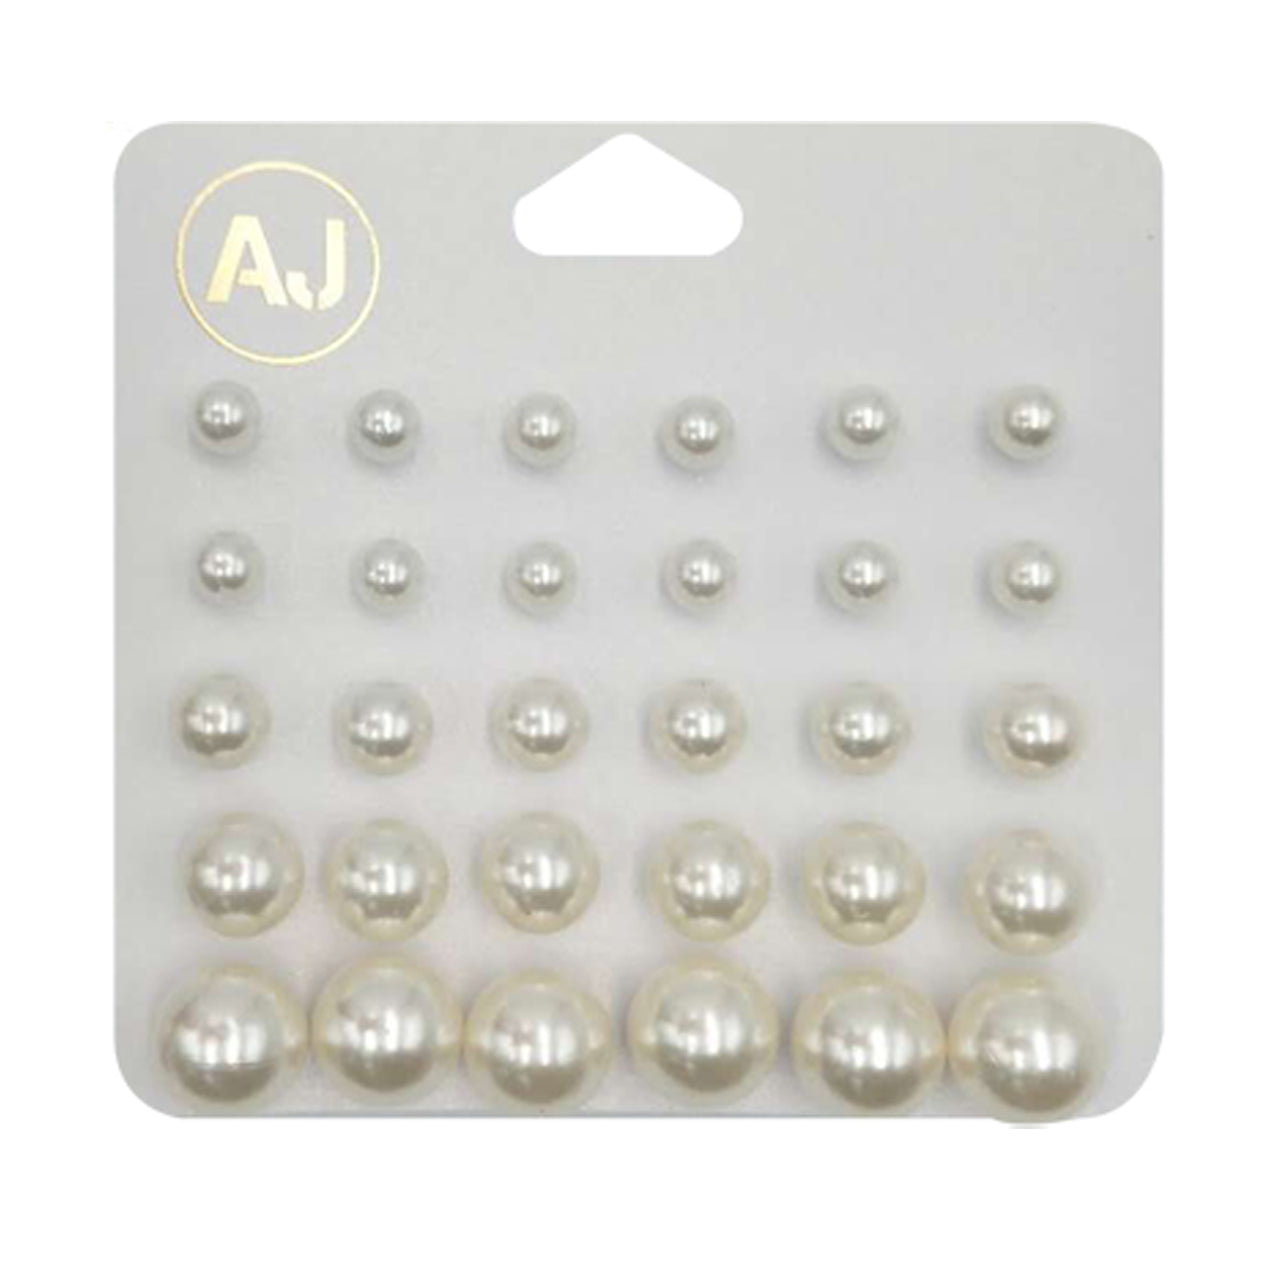 AJ-EM1120 Pearl Shape Multi Size Earring : 1 DZ